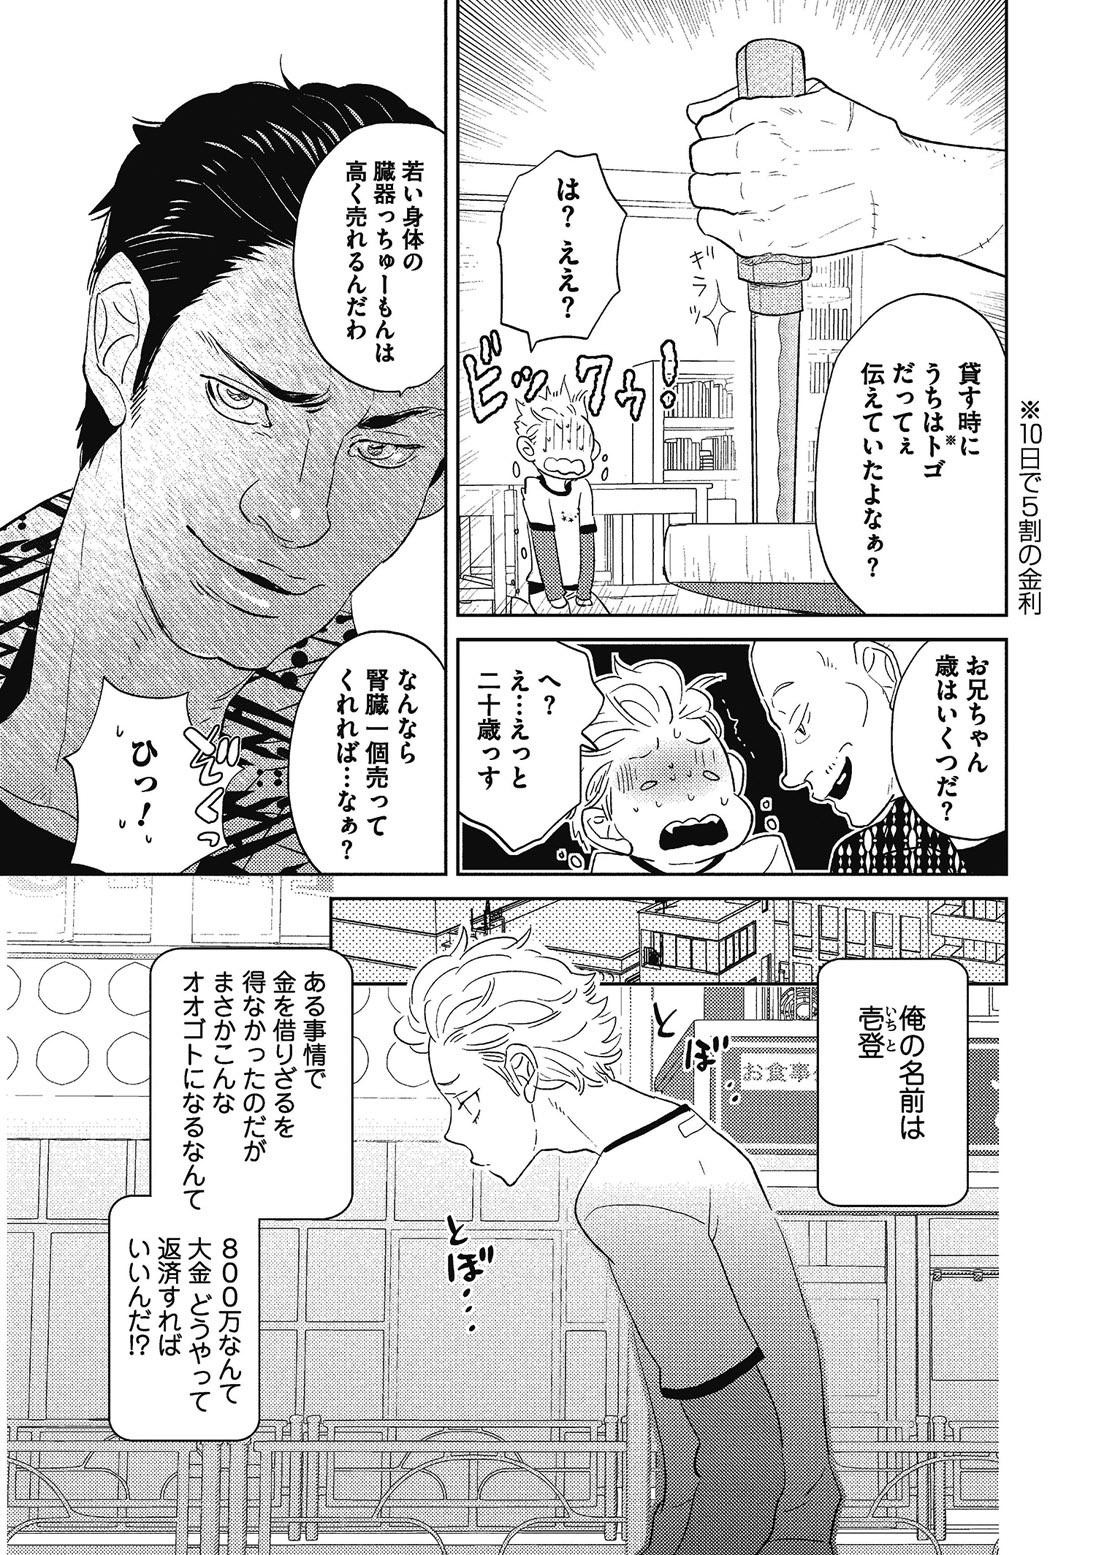 Satin Otokonoko o Suki ni naru no wa Shikata ga nai Penis Sucking - Page 8